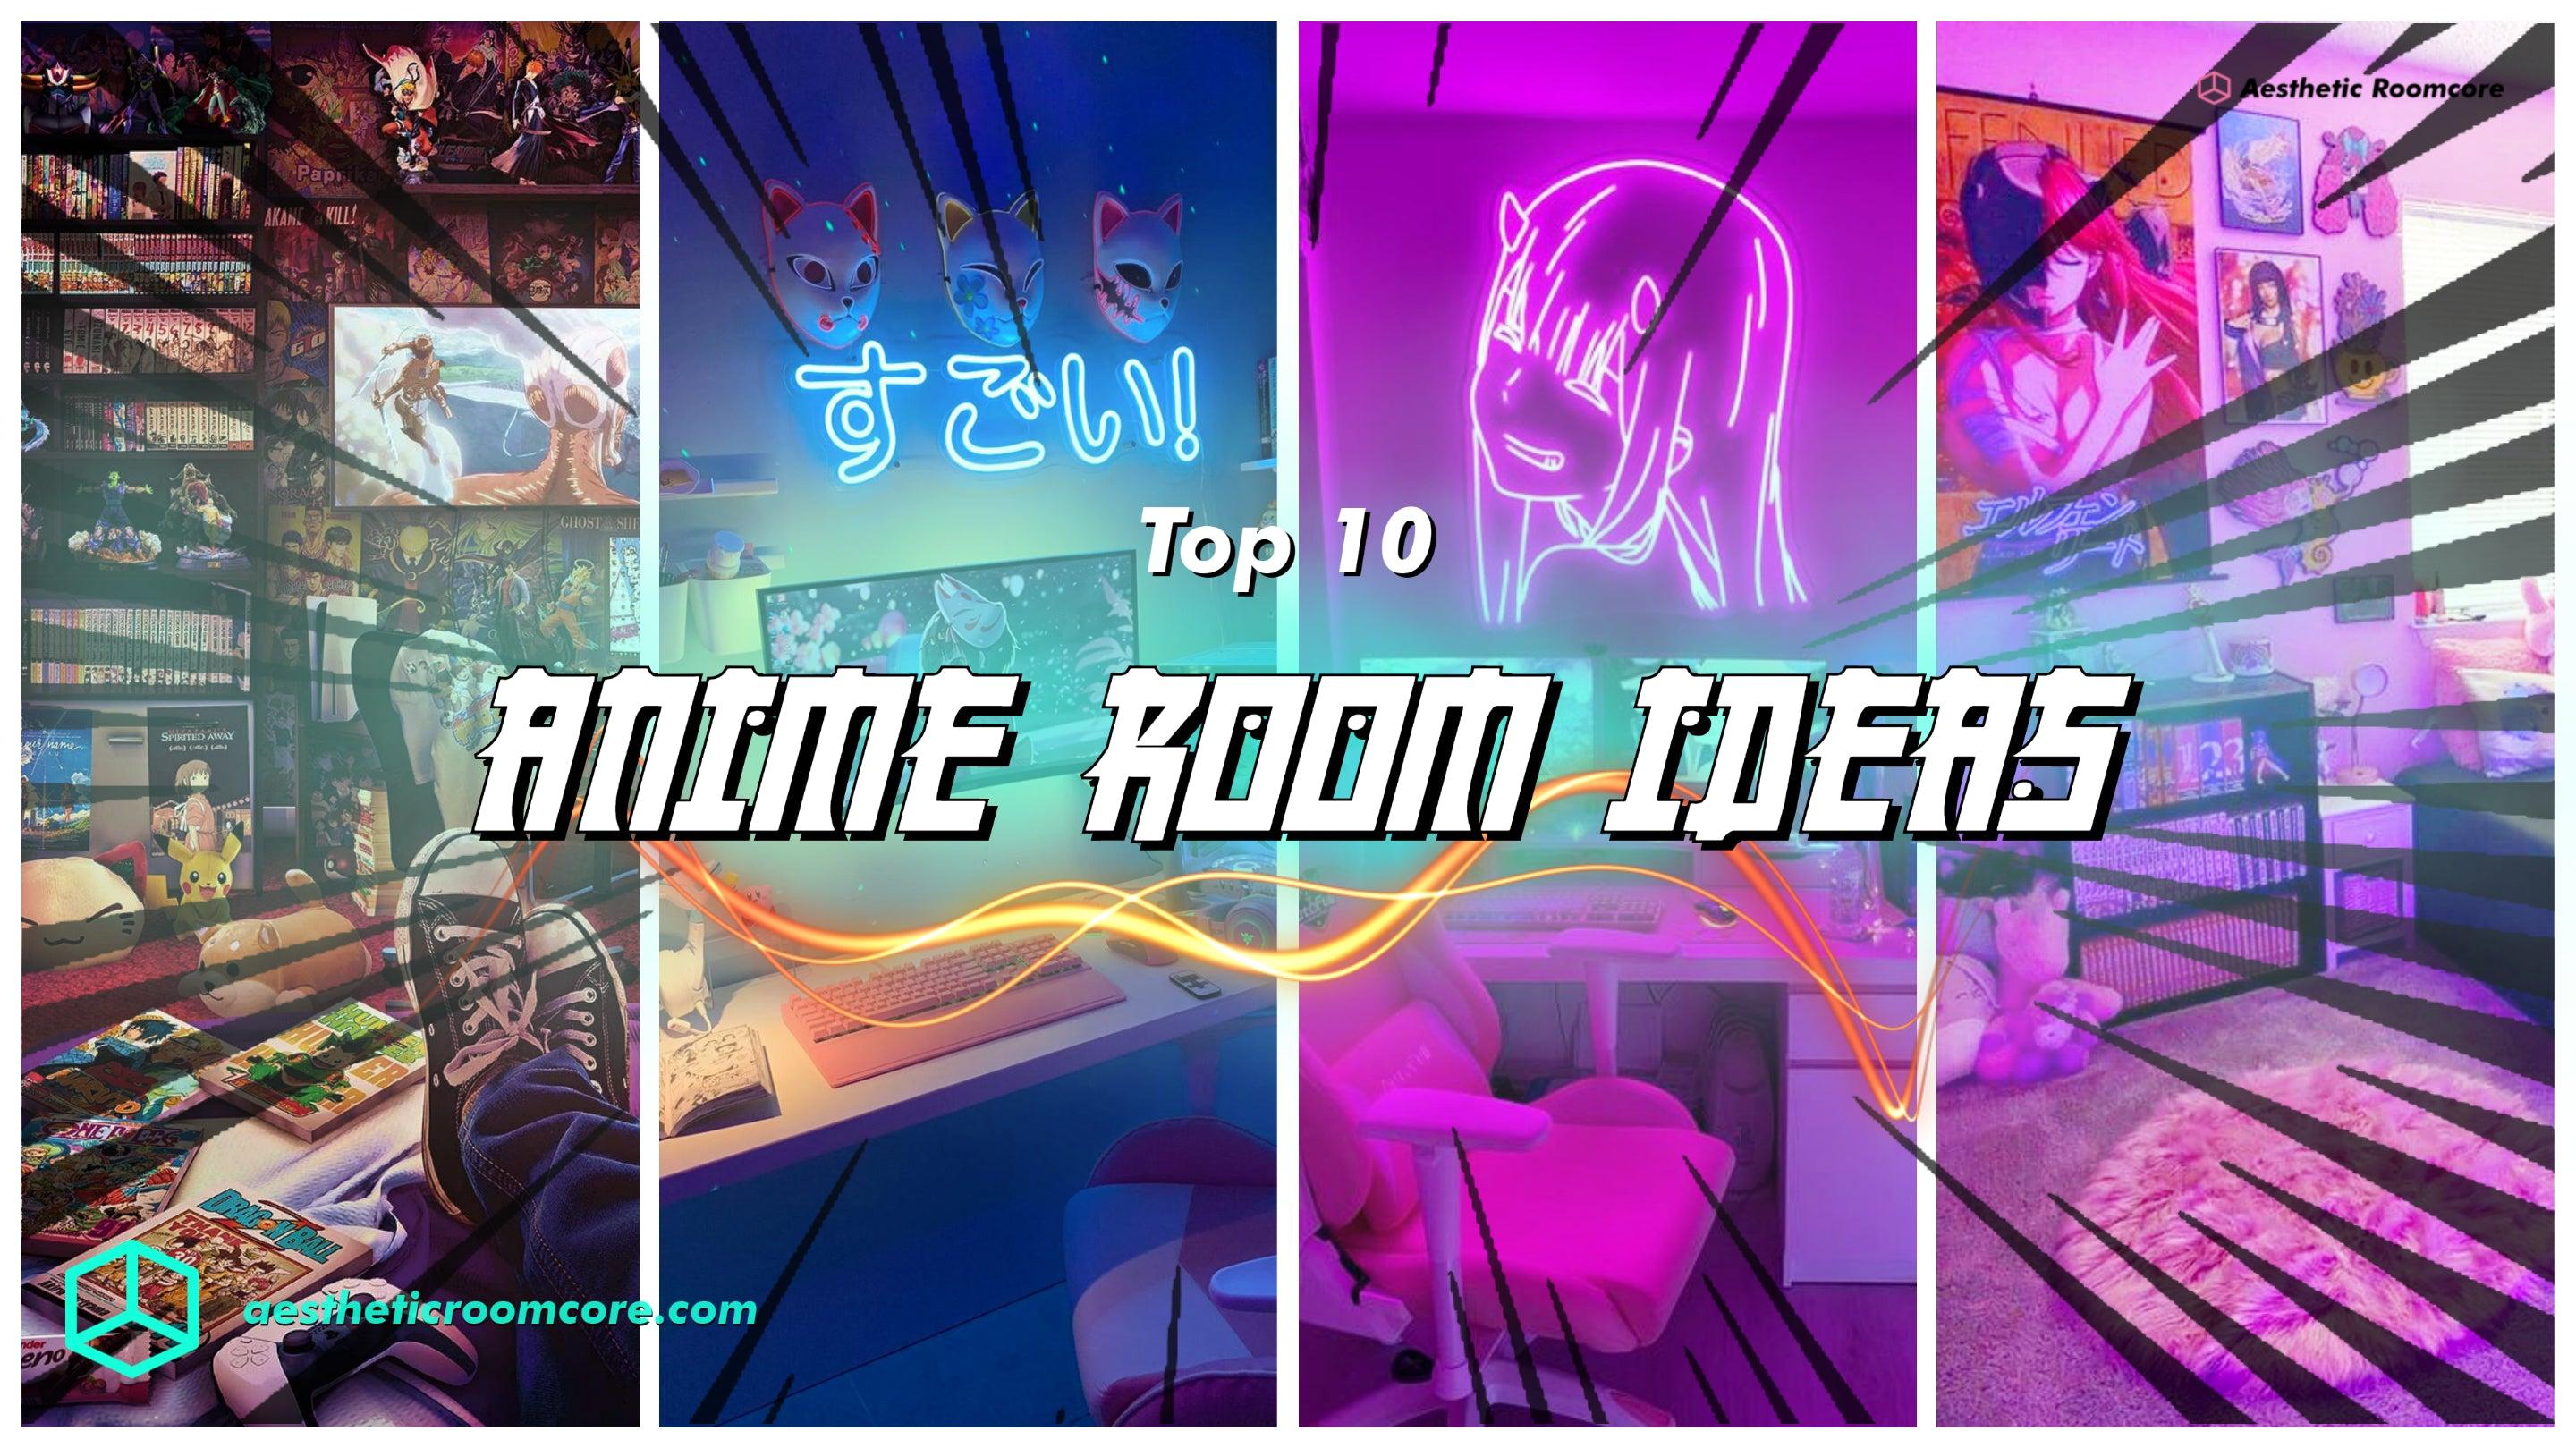 Top Anime Room Ideas Decor